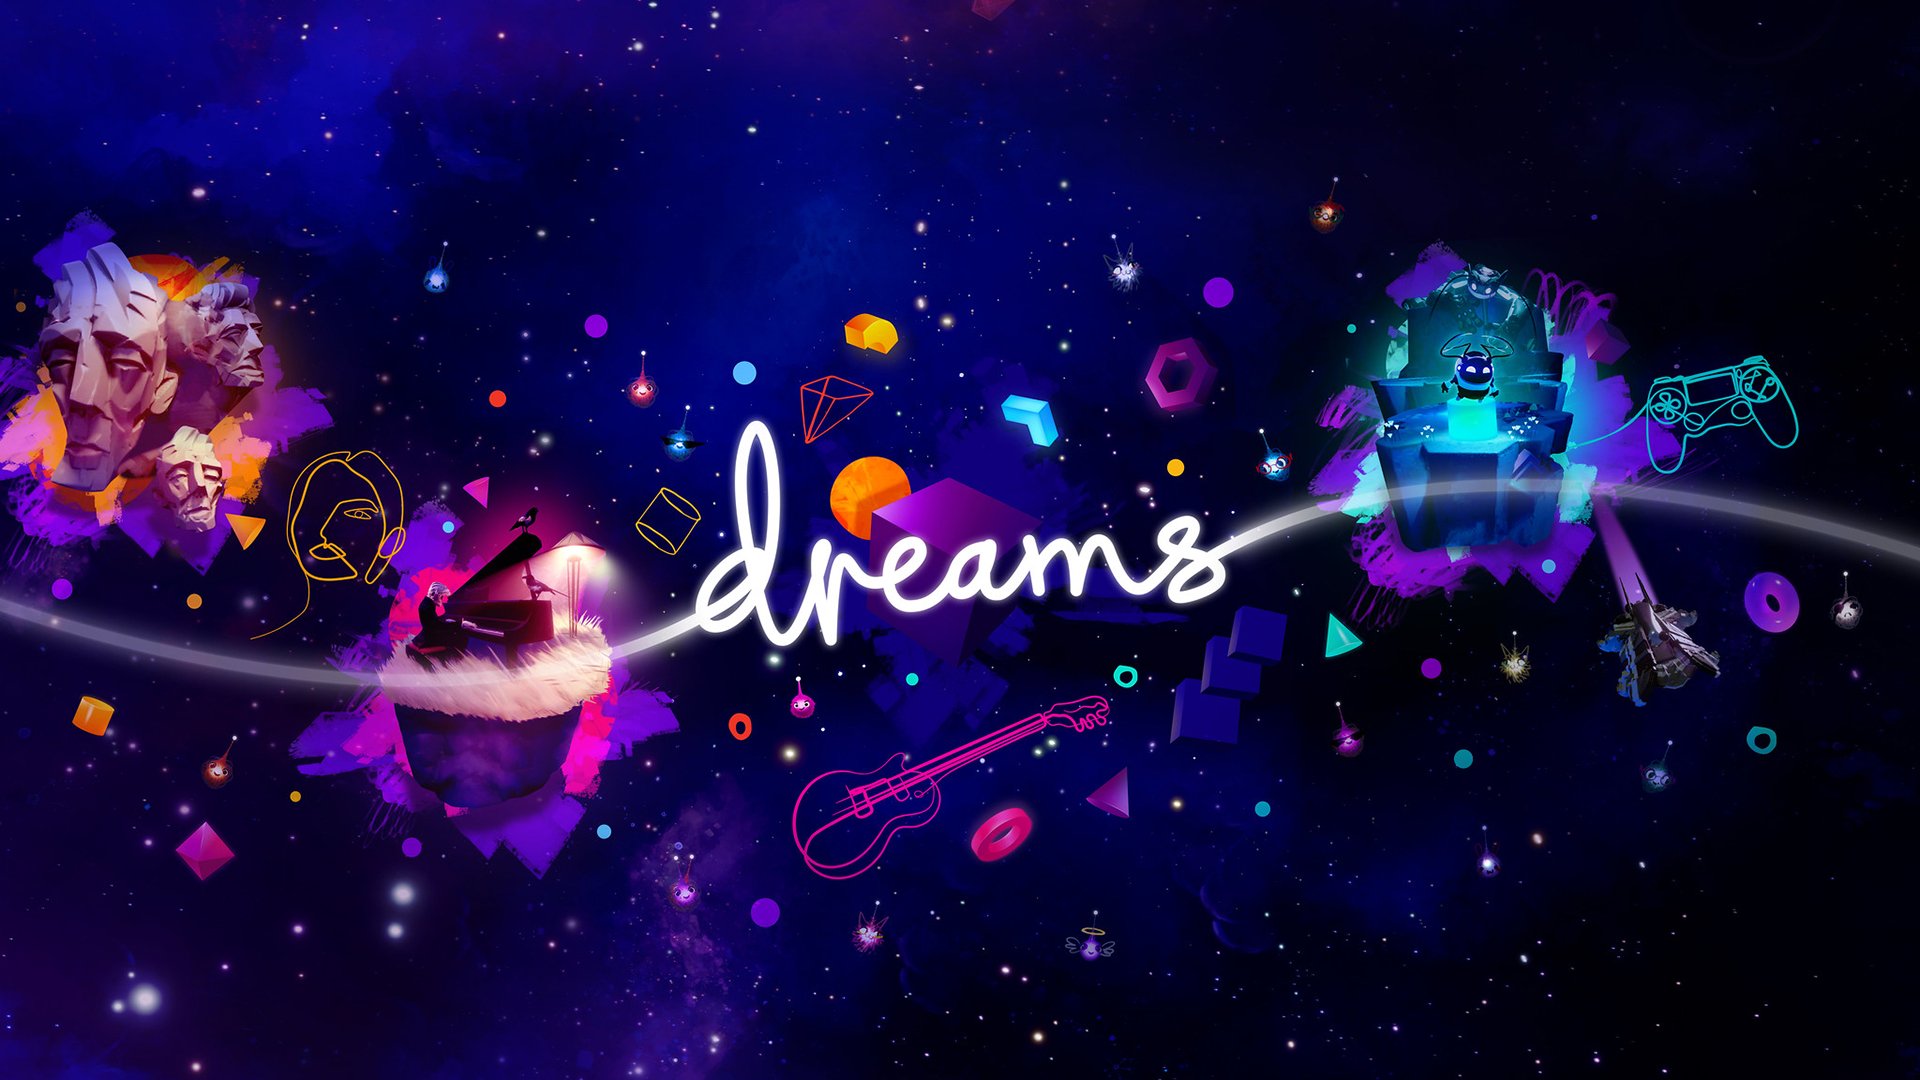 Dalam Mimpi (PS4), imajinasi Anda menjadi hidup